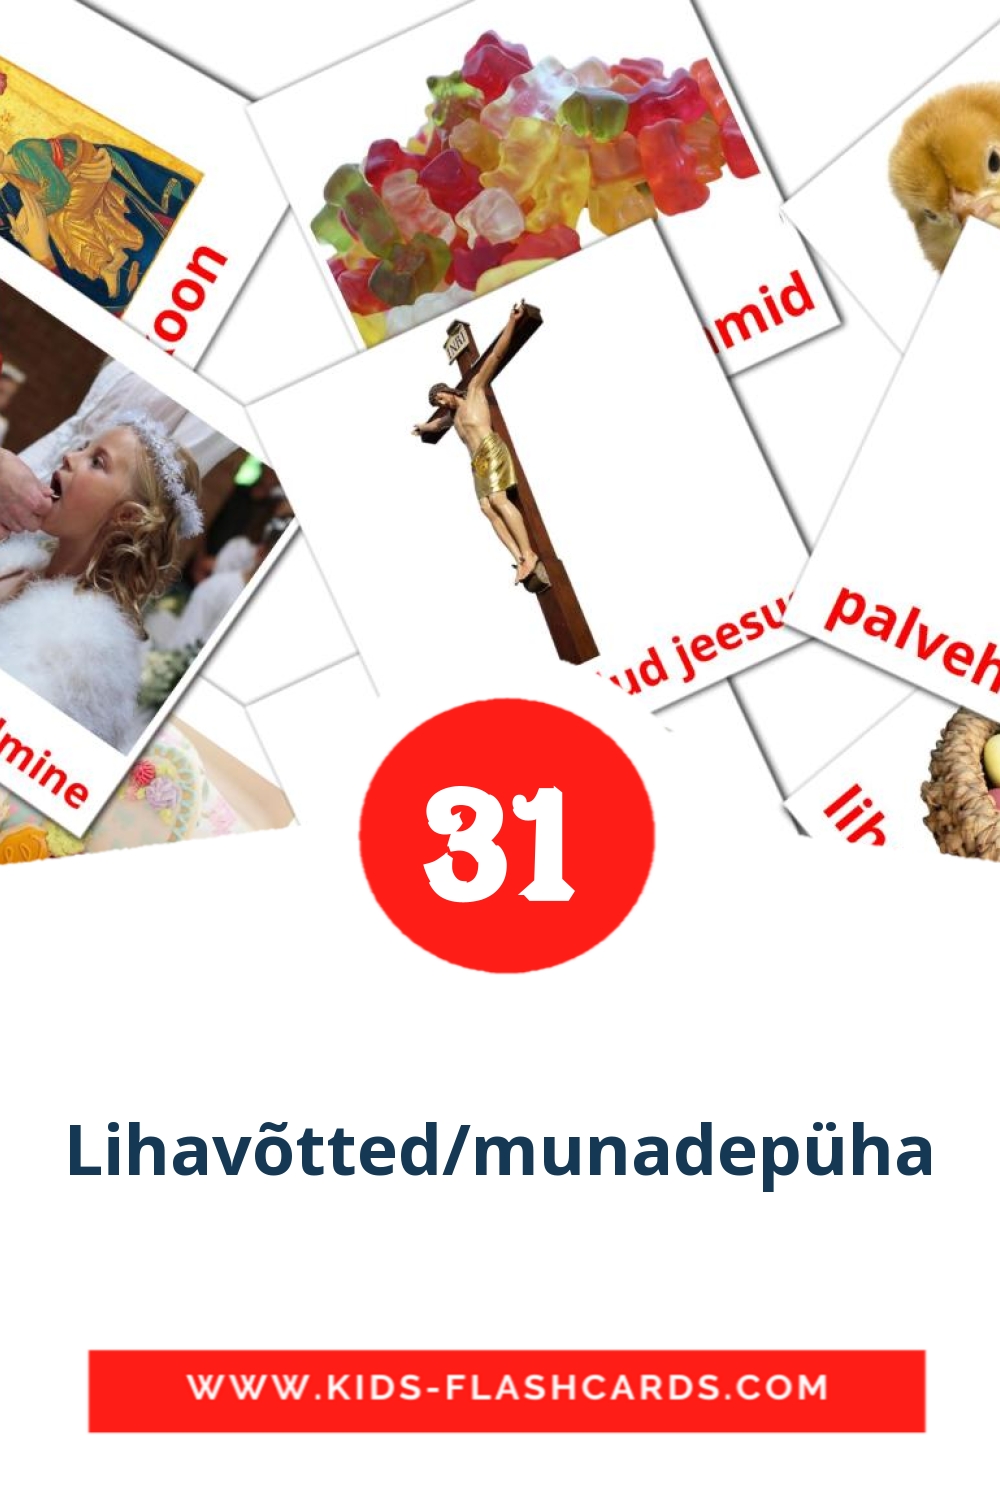 31 cartes illustrées de Lihavõtted/munadepüha pour la maternelle en estonien